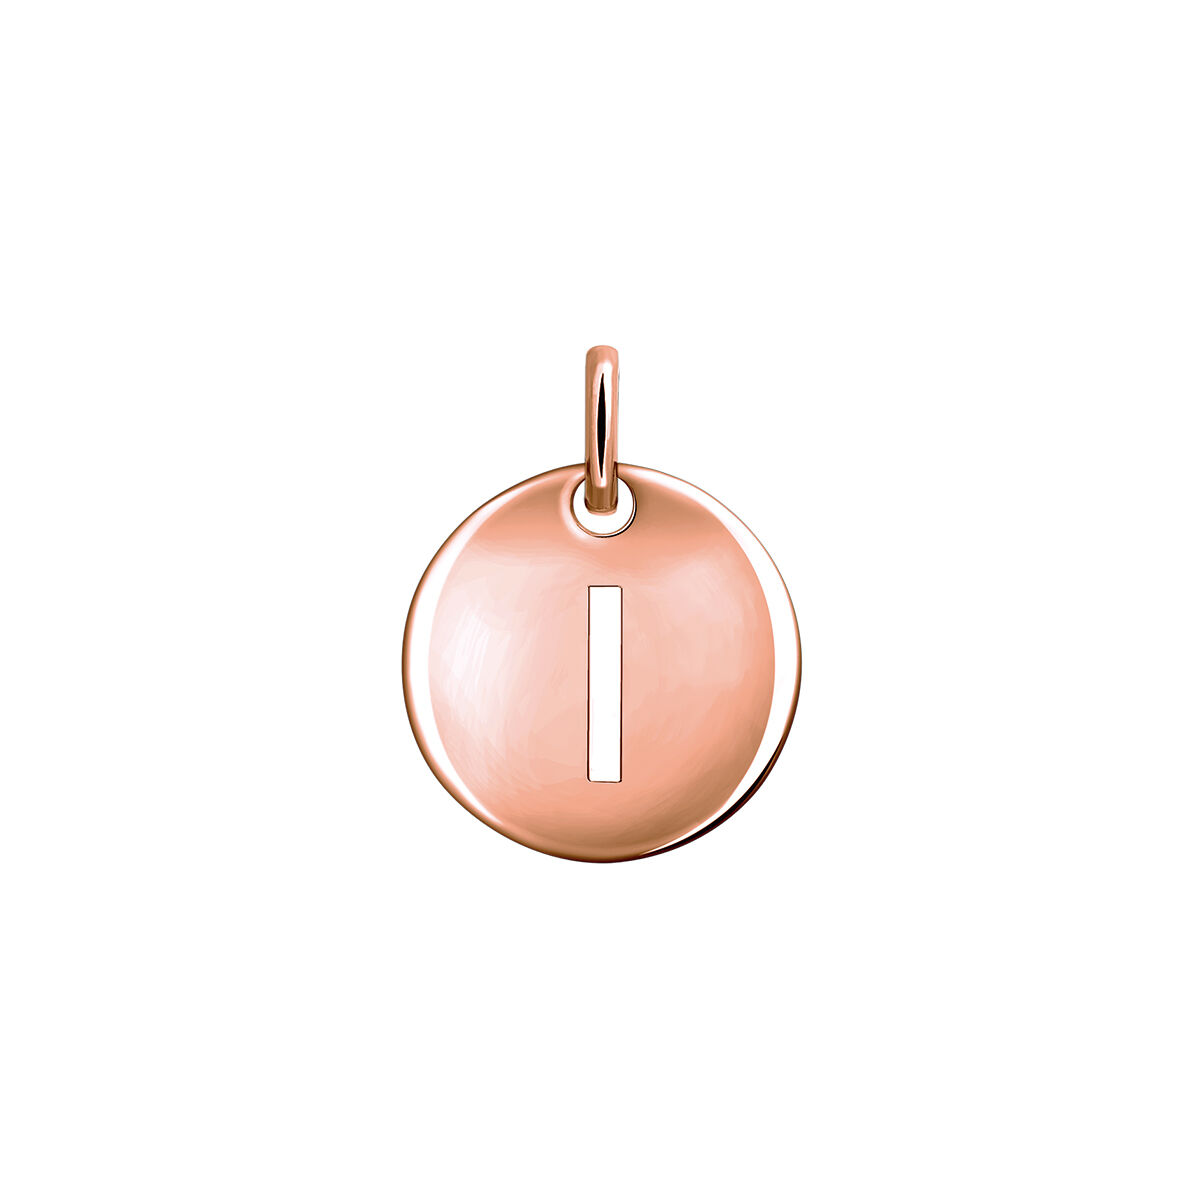 Charm medalla inicial I plata recubierta oro rosa  , J03455-03-I, hi-res